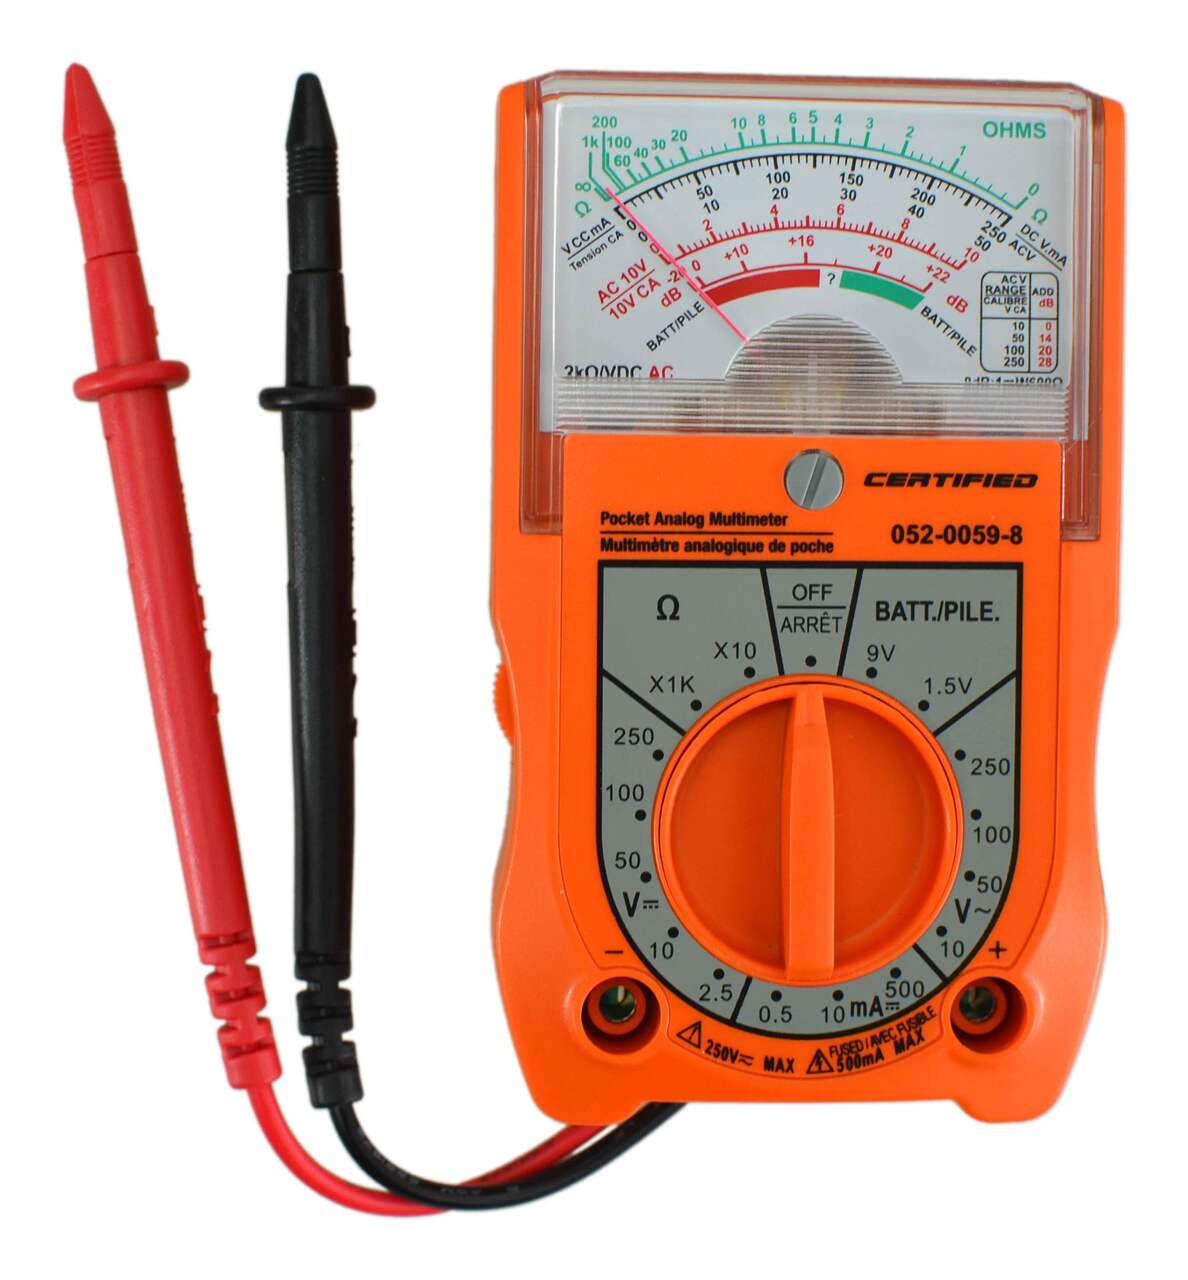 Multimètre analogique Certified avec 6 fonctions et 16 calibres, orange